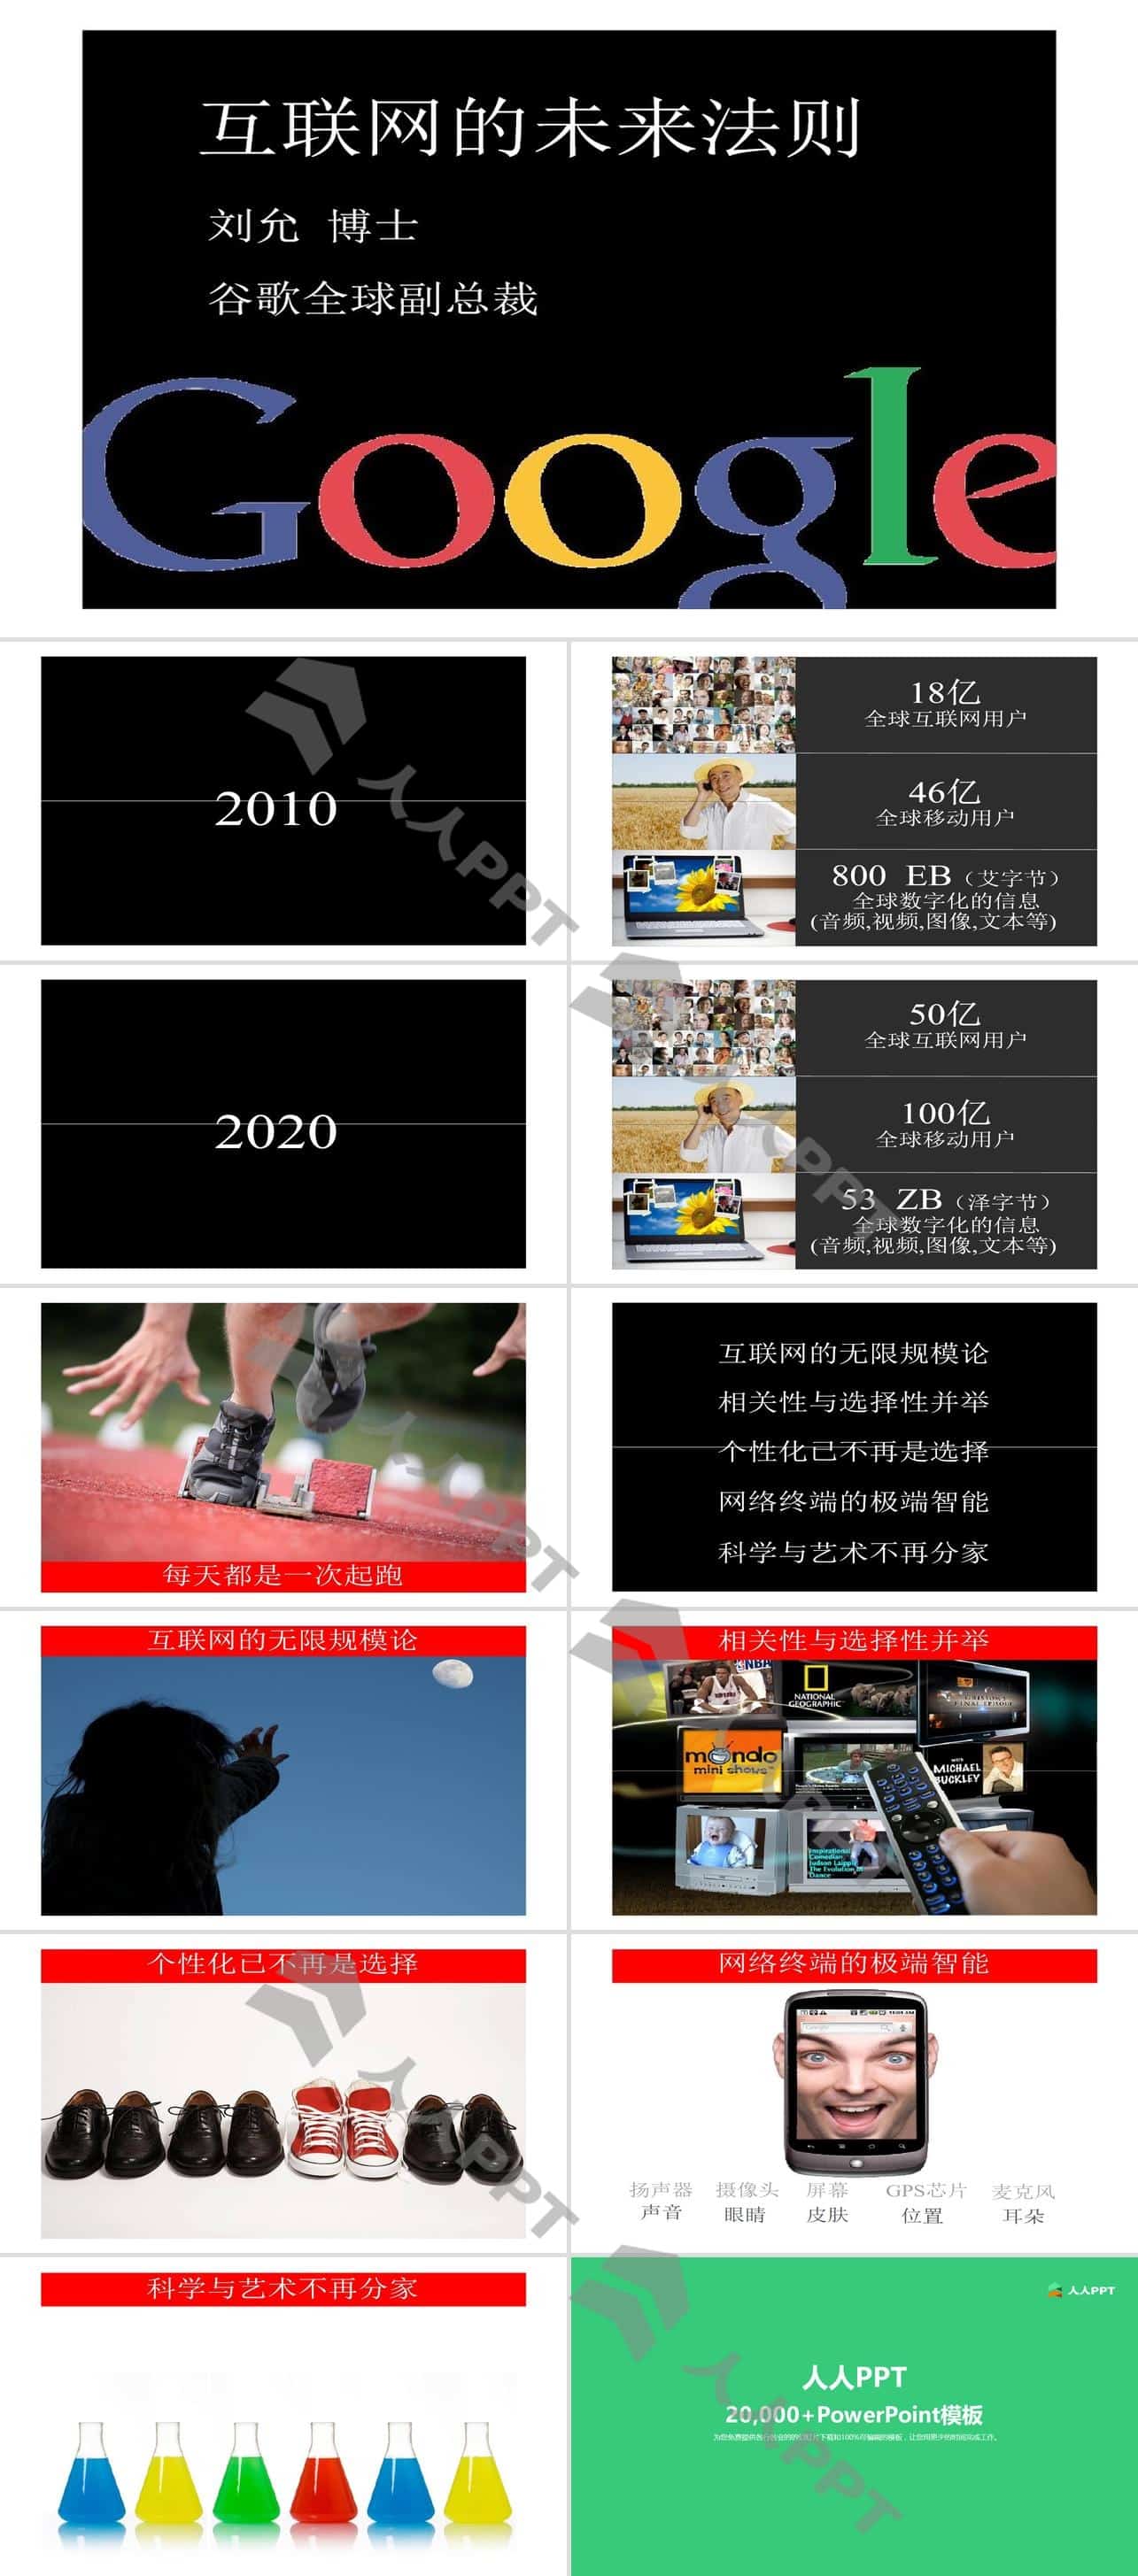 中国互联网大会GoogleCEOPPT演讲模板长图